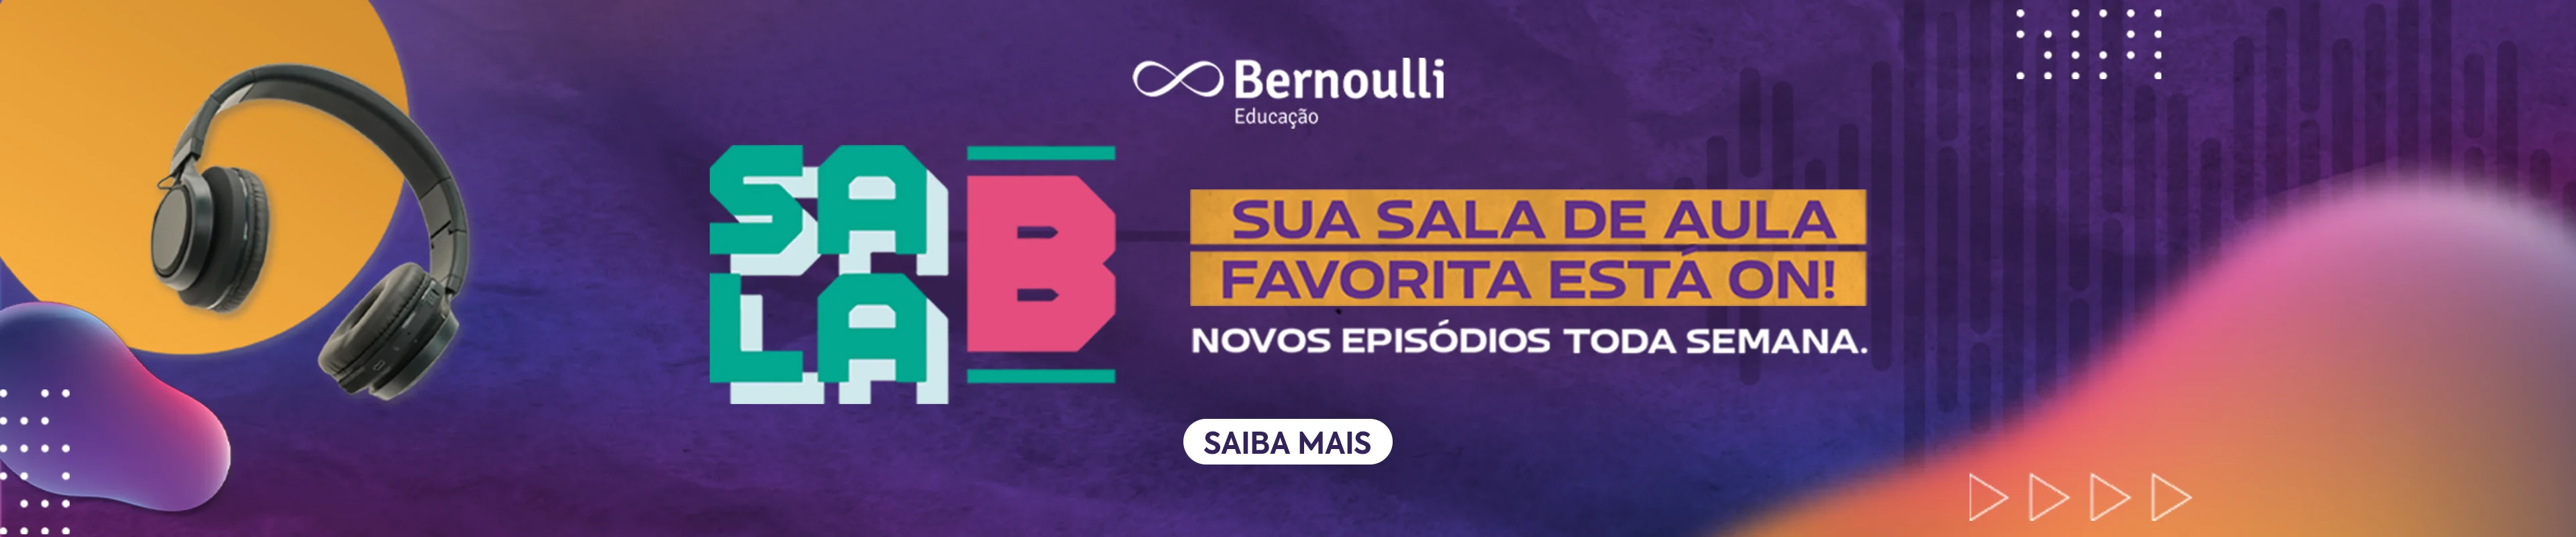 Carrossel divulgando o podcast Sala B do Bernoulli educação